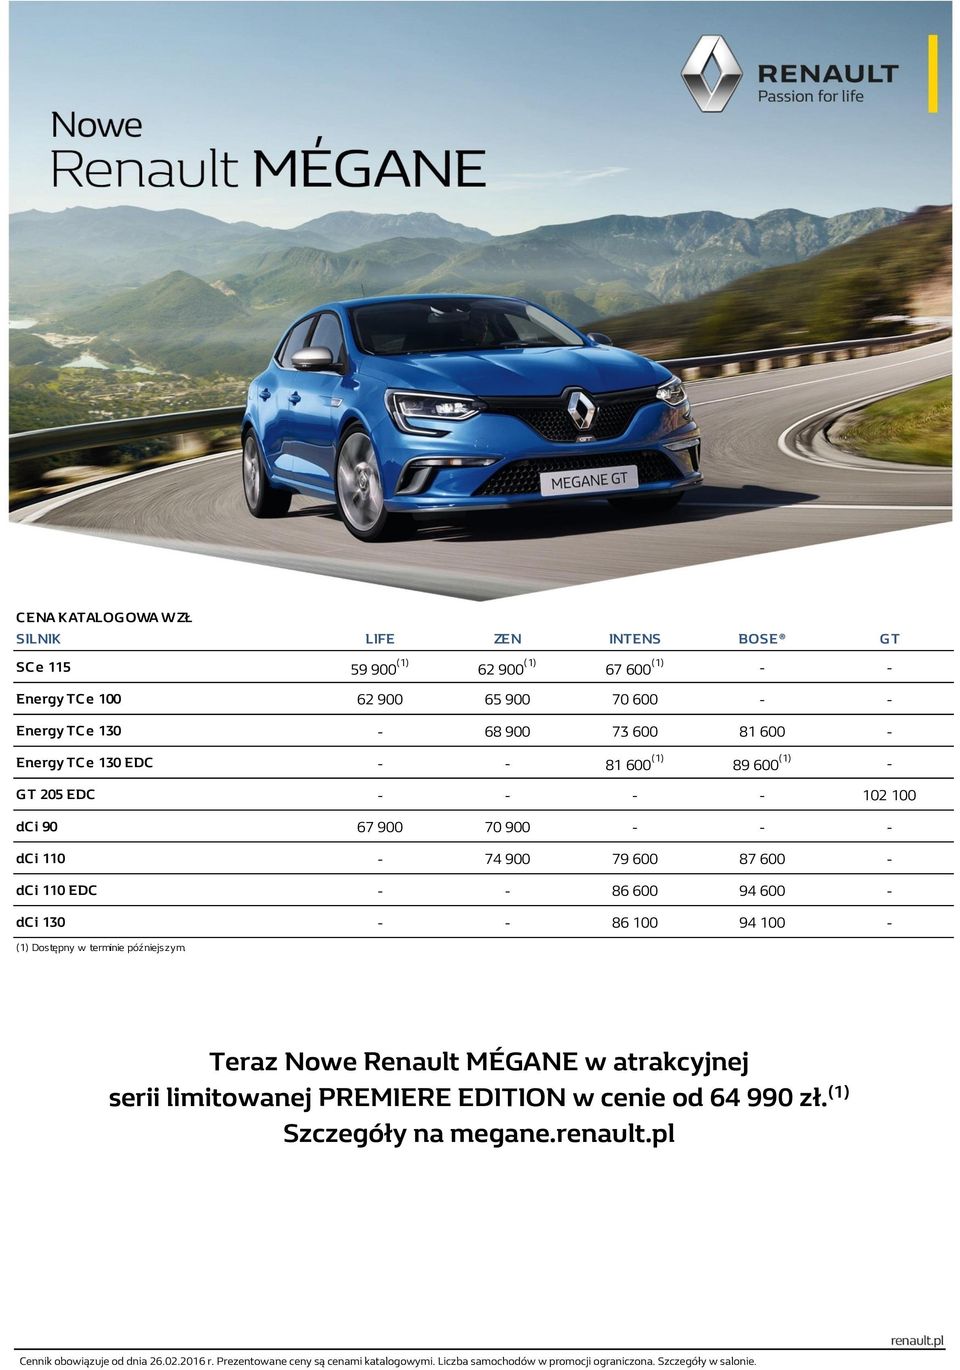 - dc i 130 - - 86 100 94 100 - (1) Dostępny w terminie późniejszym. Teraz Nowe Renault MÉGANE w atrakcyjnej serii limitowanej PREMIERE EDITION w cenie od 64 990 zł.